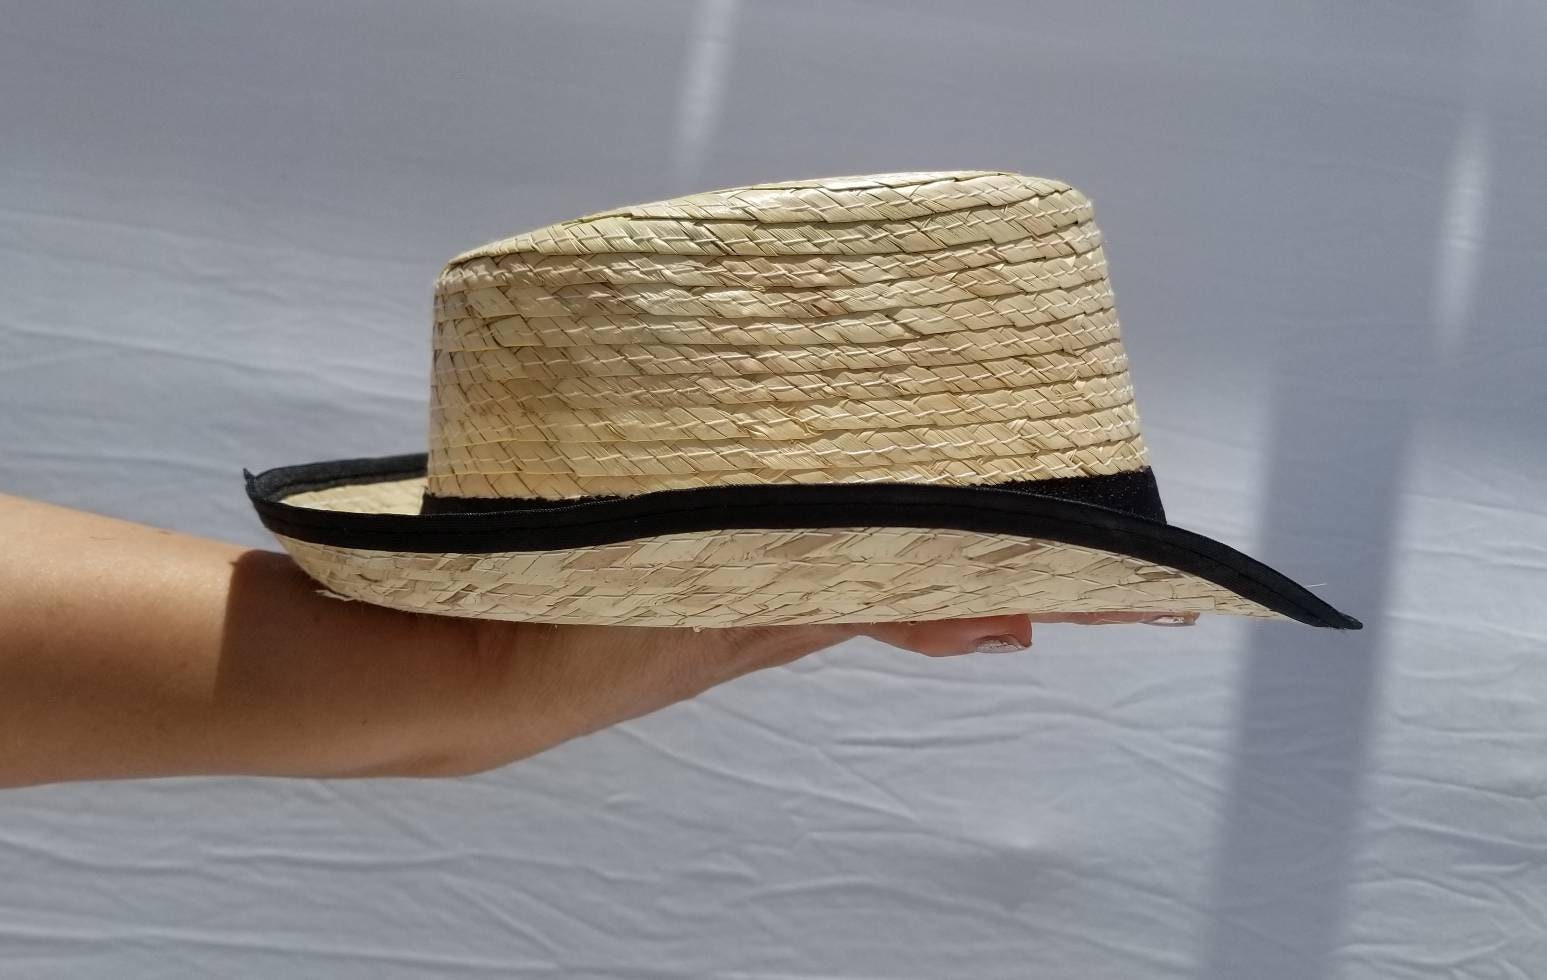 Sombrero de paja Casanova para niños pequeños, hecho a mano en México  tamaño general aprox. 10 x 9 pulgadas donde la cabeza se encuentra entre 19  y 20 iches -  México